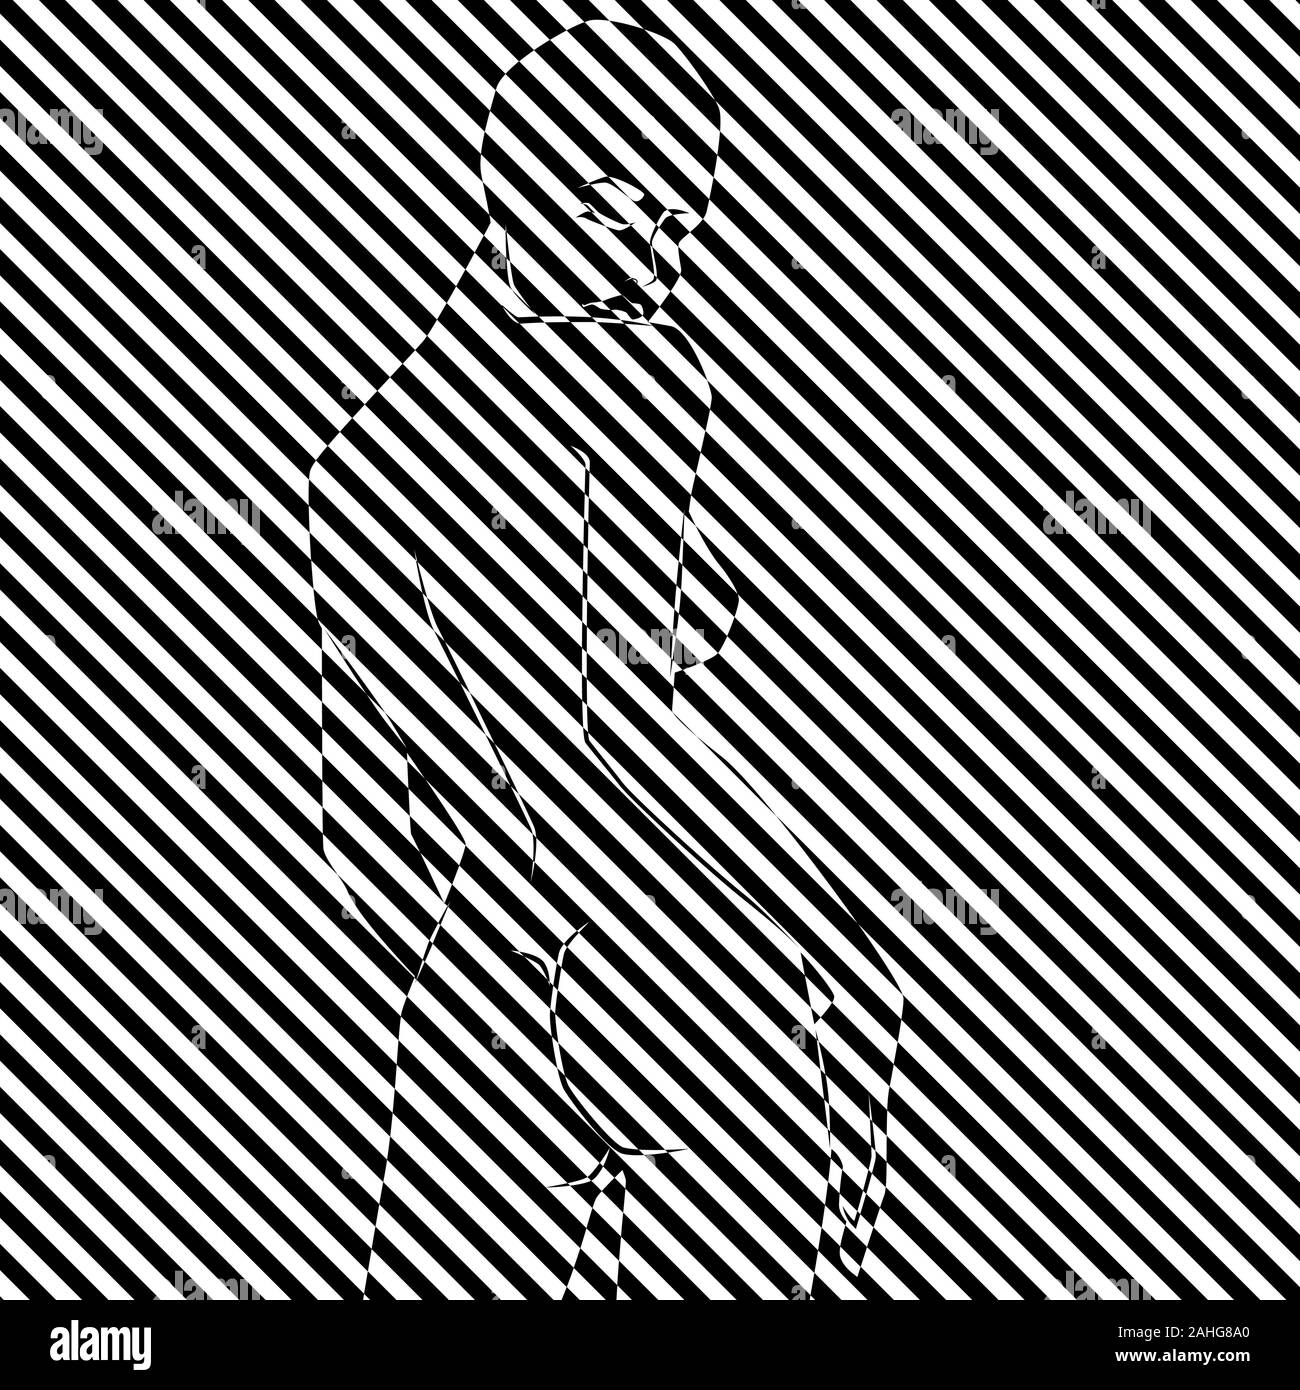 Zusammenfassung der elegante Frau in Abbildung 2 schmale schwarze und weiße diagonale Streifen, Pseudo-3D-Optik Stock Vektor